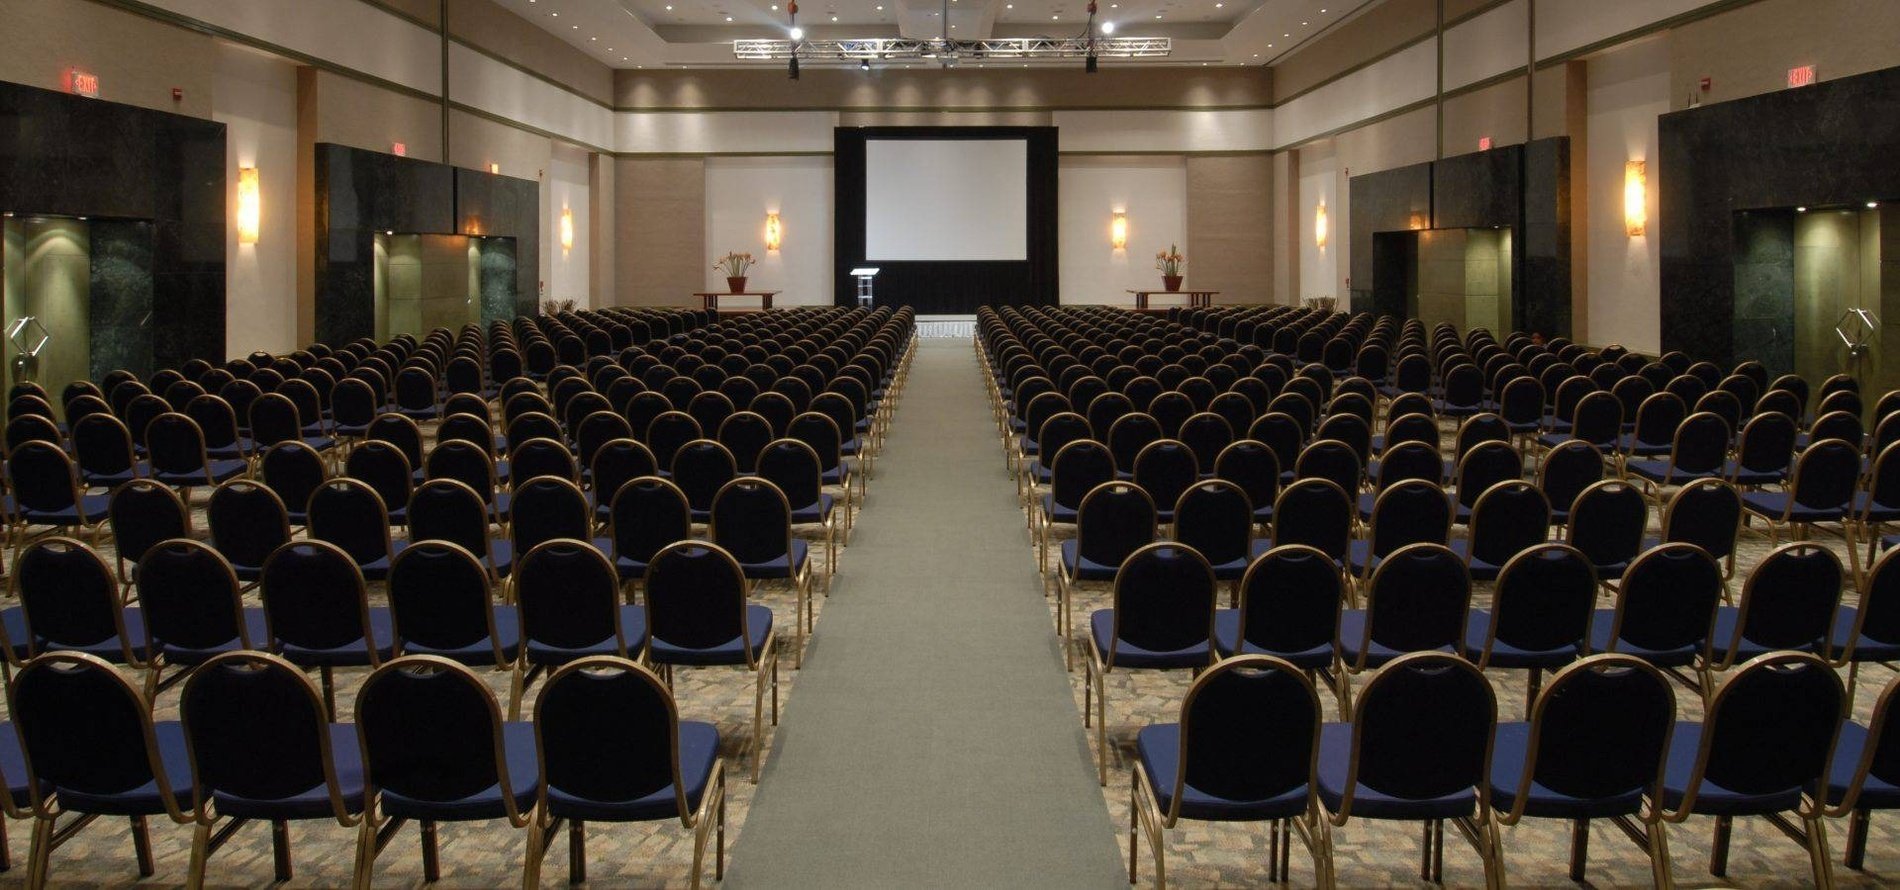 Vista general de sala de eventos con sillas, atril y proyector de  Park Royal hotels and resorts 